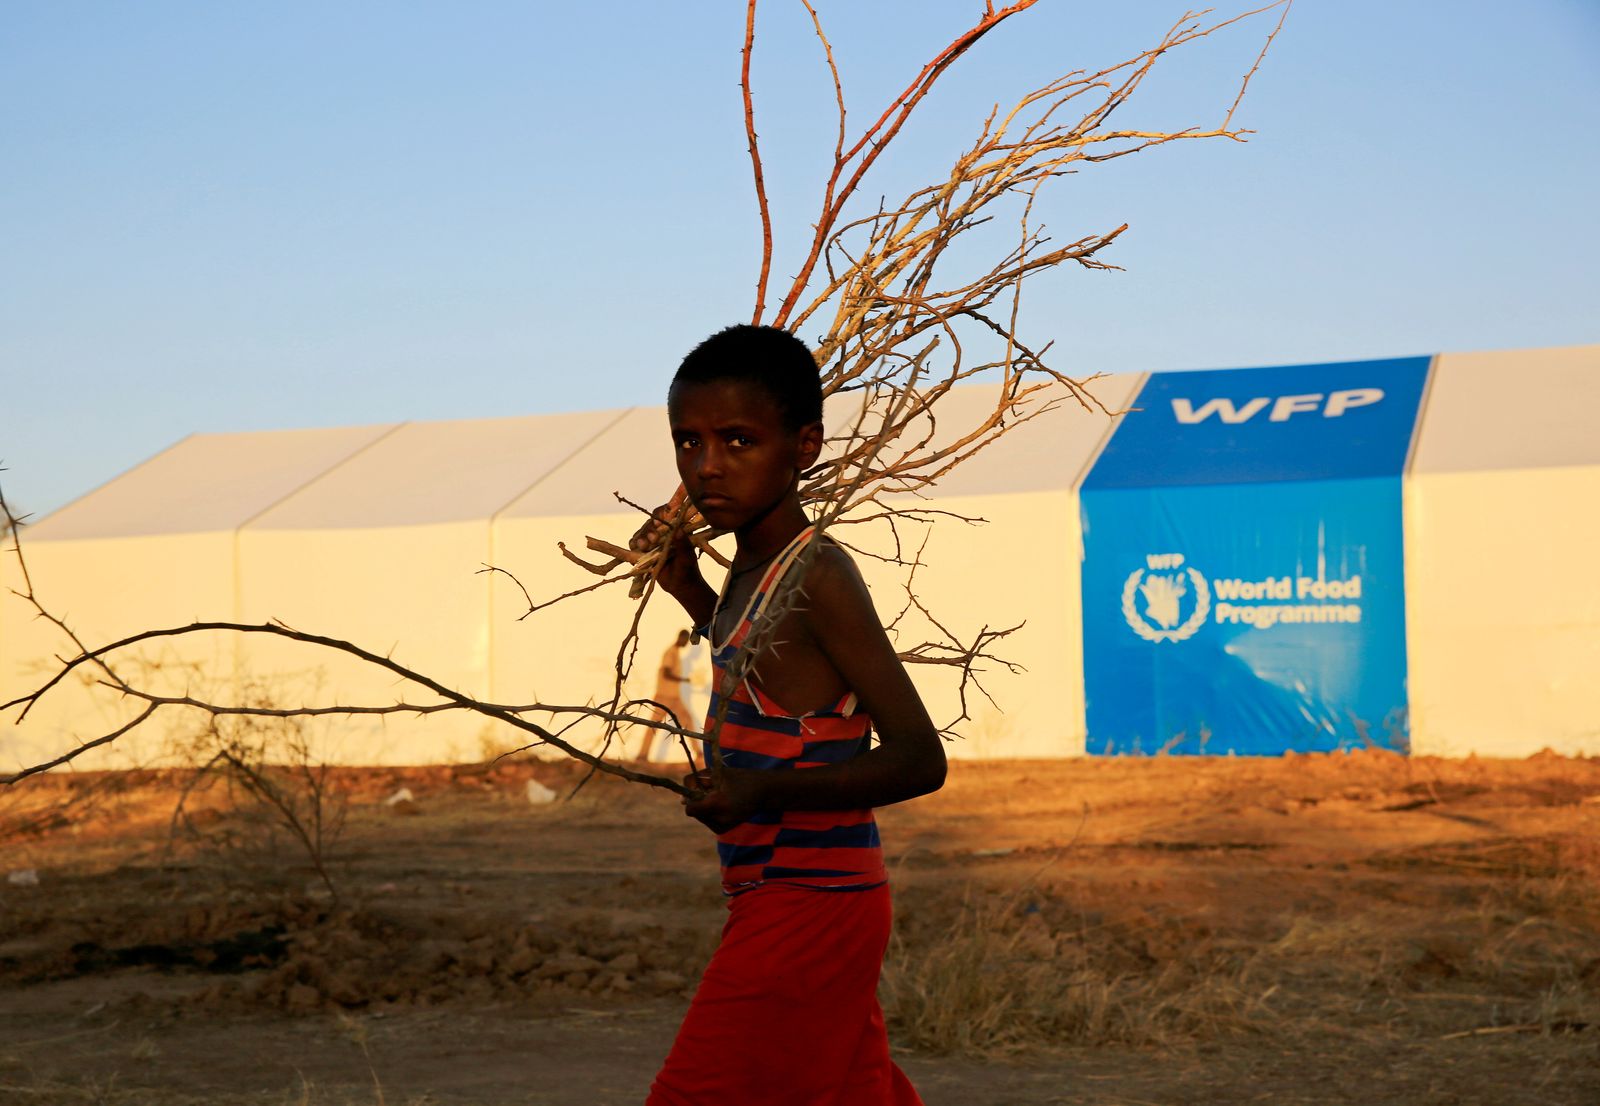 طفل إثيوبي يفر من القتال الدائر في منطقة تيغراي، يمر أمام خيمة برنامج الغذاء العالمي. - REUTERS